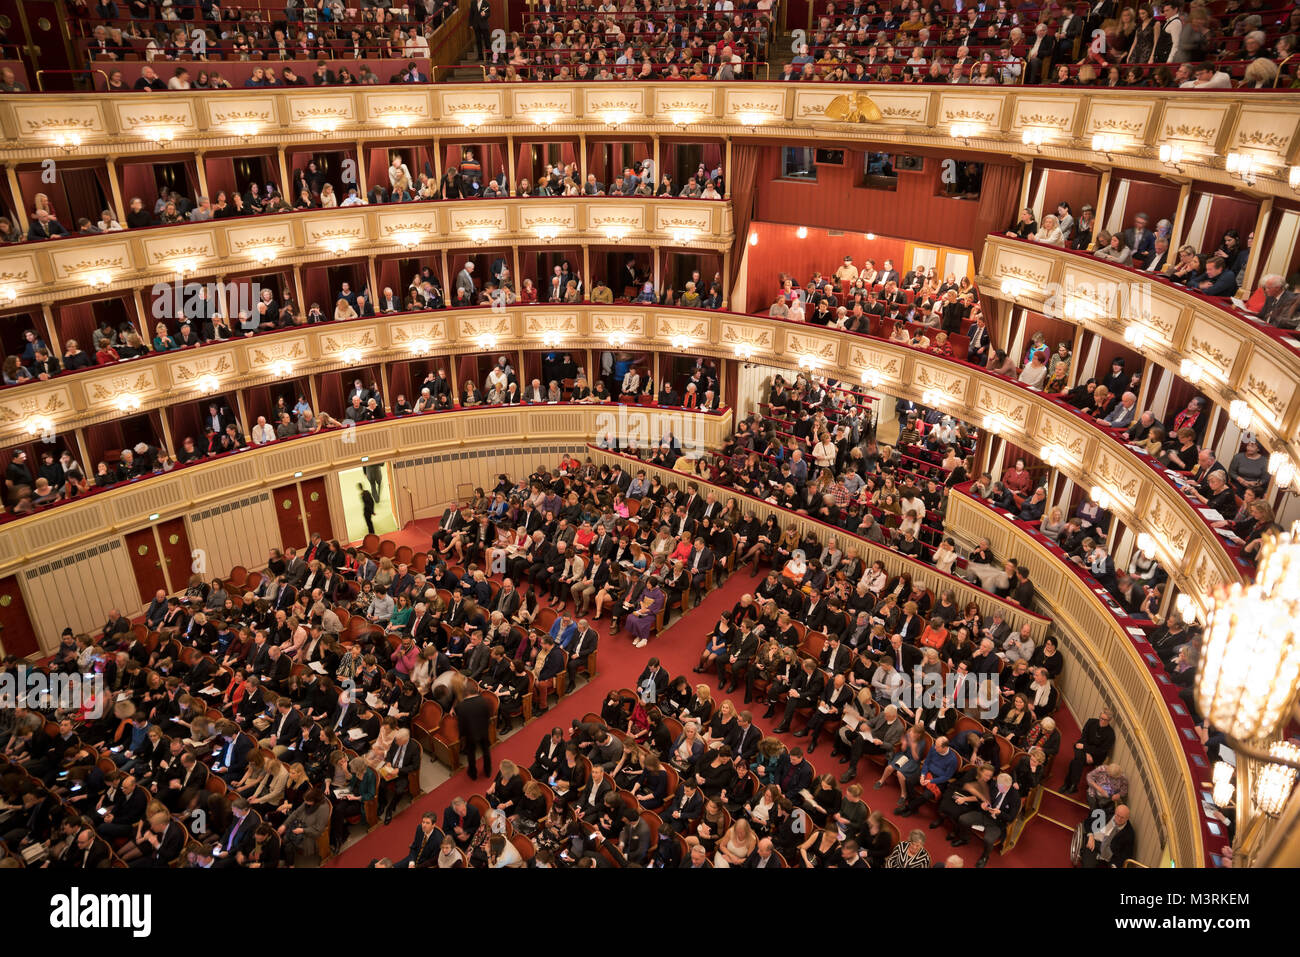 Wien, ÖSTERREICH - Februar, 2018: Innenraum der Wiener Staatsoper Auditorium mit Publikum bereit für die Leistung. Stockfoto